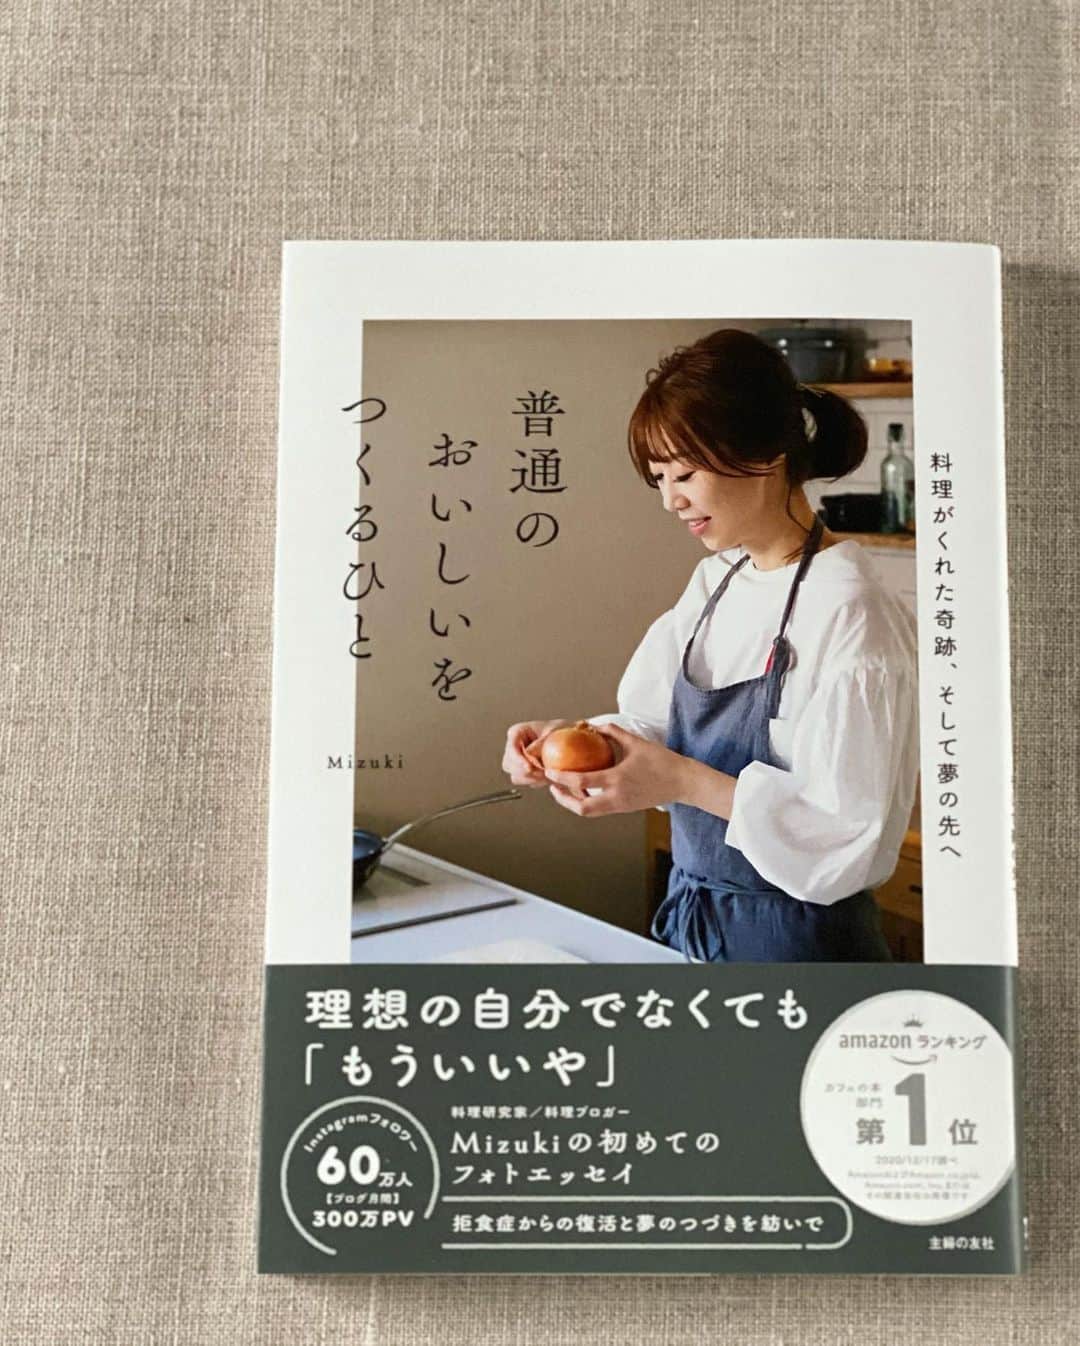 Mizuki【料理ブロガー・簡単レシピ】さんのインスタグラム写真 - (Mizuki【料理ブロガー・簡単レシピ】Instagram)「・﻿ 【#レシピ 】ーーーーーーーーーーーーー﻿ ♡油大3！鶏むね肉de焼きチキン竜田♡﻿ ーーーーーーーーーーーーーーーーーーー﻿ ﻿ ﻿ ﻿ おはようございます(*^^*)﻿ ﻿ 今日ご紹介させていただくのは﻿ \ 揚げずに作れるチキン竜田 /﻿ ﻿ 鶏むね肉でコスパ抜群！﻿ しかも油は大3杯！﻿ 甘酢っぱいごまだれをかけて﻿ 簡単豪華に仕上げました(*´艸`)﻿ ﻿ 小さなフライパンを使い﻿ 鶏肉をドーンっと入れることで﻿ 少ない油でも嵩が上がり﻿ まるで揚げたかのように仕上がりますよ♩﻿ ﻿ ﻿ ﻿ ＿＿＿＿＿＿＿＿＿＿＿＿＿＿＿＿＿＿＿＿﻿ 【2人分】﻿ 鶏むね肉...大1枚(300g)﻿ ●醤油・酒...各大1/2﻿ ●生姜チューブ...3cm﻿ 片栗粉...適量﻿ サラダ油...大3﻿ ☆醤油・みりん・白ごま...各大1.5﻿ ☆砂糖・酢・ごま油...各小2﻿ ﻿ 1.鶏肉は身の厚い部分を開いて全体をフォークで刺し、●を揉み込み、片栗粉をしっかりまぶす。耐熱ボウルに☆を入れ、600Wのレンジで1分加熱する(←たれ)。﻿ 2.小さめのフライパンにサラダ油を中火で熱し、鶏肉を焼く。こんがりしたら裏返し、裏面も2〜3分間焼いて火を通す。﻿ 3.2を食べやすい大きさに切り、1のたれをかける。﻿ ￣￣￣￣￣￣￣￣￣￣￣￣￣￣￣￣￣￣￣￣﻿ ﻿ ﻿ ﻿ 《ポイント》﻿ ♦︎直径20cmのフライパンを使用しています♩﻿ ♦︎片栗粉は全体にたっぷりまぶして下さい♩﻿ ♦︎鶏肉はしっかり焼き色が付いてから裏返して下さい♩(再掲載です)﻿ ﻿ ﻿ ﻿ ﻿ ﻿ ﻿ ﻿ 昨夜は''なりすましの件''で﻿ お騒がせ致しました😢﻿ おかげさまで今はもう見つからないのですが﻿ 最近増えているようなのでご注意下さいね😭﻿ カタコトのメッセージが届くようで﻿ (あからさまにわかるようですが)﻿ それは詐欺みたいです💦﻿ ﻿ そして昨日は﻿ インスタライブもお付き合いいただき﻿ ありがとうございました😊﻿ IGTVに保存しておりますので﻿ おやつやバレンタインに﻿ よかったらお試し下さいませ(*^^*)✨﻿ ﻿ ﻿ ﻿ ﻿ ﻿ ﻿ ﻿ ﻿ ⭐️発売中⭐️﻿ ＿＿＿＿＿＿＿＿＿＿＿＿＿＿＿＿＿＿﻿ ホケミレシピの決定版♩﻿ \はじめてでも失敗しない/﻿ 📙#ホットケーキミックスのお菓子 📙﻿ ﻿ NHKまる得マガジンテキスト☆﻿ ホットケーキミックスで﻿ 📗絶品おやつ&意外なランチ📗﻿ ﻿ しんどくない献立、考えました♩﻿ \15分でいただきます/﻿ 📕#Mizukiの2品献立 📕﻿ ﻿ 和食をもっとカジュアルに♩﻿ \毎日のごはんがラクになる/﻿ 📘#Mizukiの今どき和食 📘﻿ ﻿ 重版しました！﻿ ありがとうございます😭﻿ 📗ラクしておいしい！#1品晩ごはん 📗﻿ ﻿ 摂食障害から料理研究家になるまでを綴った﻿ はじめてのエッセイ本﻿ 📙#普通のおいしいをつくるひと 📙﻿ ￣￣￣￣￣￣￣￣￣￣￣￣￣￣￣￣￣￣￣﻿ ﻿ ﻿ ﻿ ﻿ ﻿ ＿＿＿＿＿＿＿＿＿＿＿＿＿＿＿＿＿＿﻿ レシピを作って下さった際や﻿ レシピ本についてのご投稿には﻿ タグ付け( @mizuki_31cafe )して﻿ お知らせいただけると嬉しいです😊💕﻿ ￣￣￣￣￣￣￣￣￣￣￣￣￣￣￣￣￣￣﻿ ﻿ ﻿ ﻿ ﻿ ﻿ #鶏むね肉#竜田焼き#揚げない#甘酢だれ#Mizuki#簡単レシピ#時短レシピ#節約レシピ#料理#フーディーテーブル#マカロニメイト#おうちごはん#デリスタグラマー#料理好きな人と繋がりたい#おうちごはんlover#写真好きな人と繋がりたい#foodpic#cooking#recipe#lin_stagrammer#foodporn#yummy#f52grams#豚バラナムルごはんm」2月1日 7時20分 - mizuki_31cafe